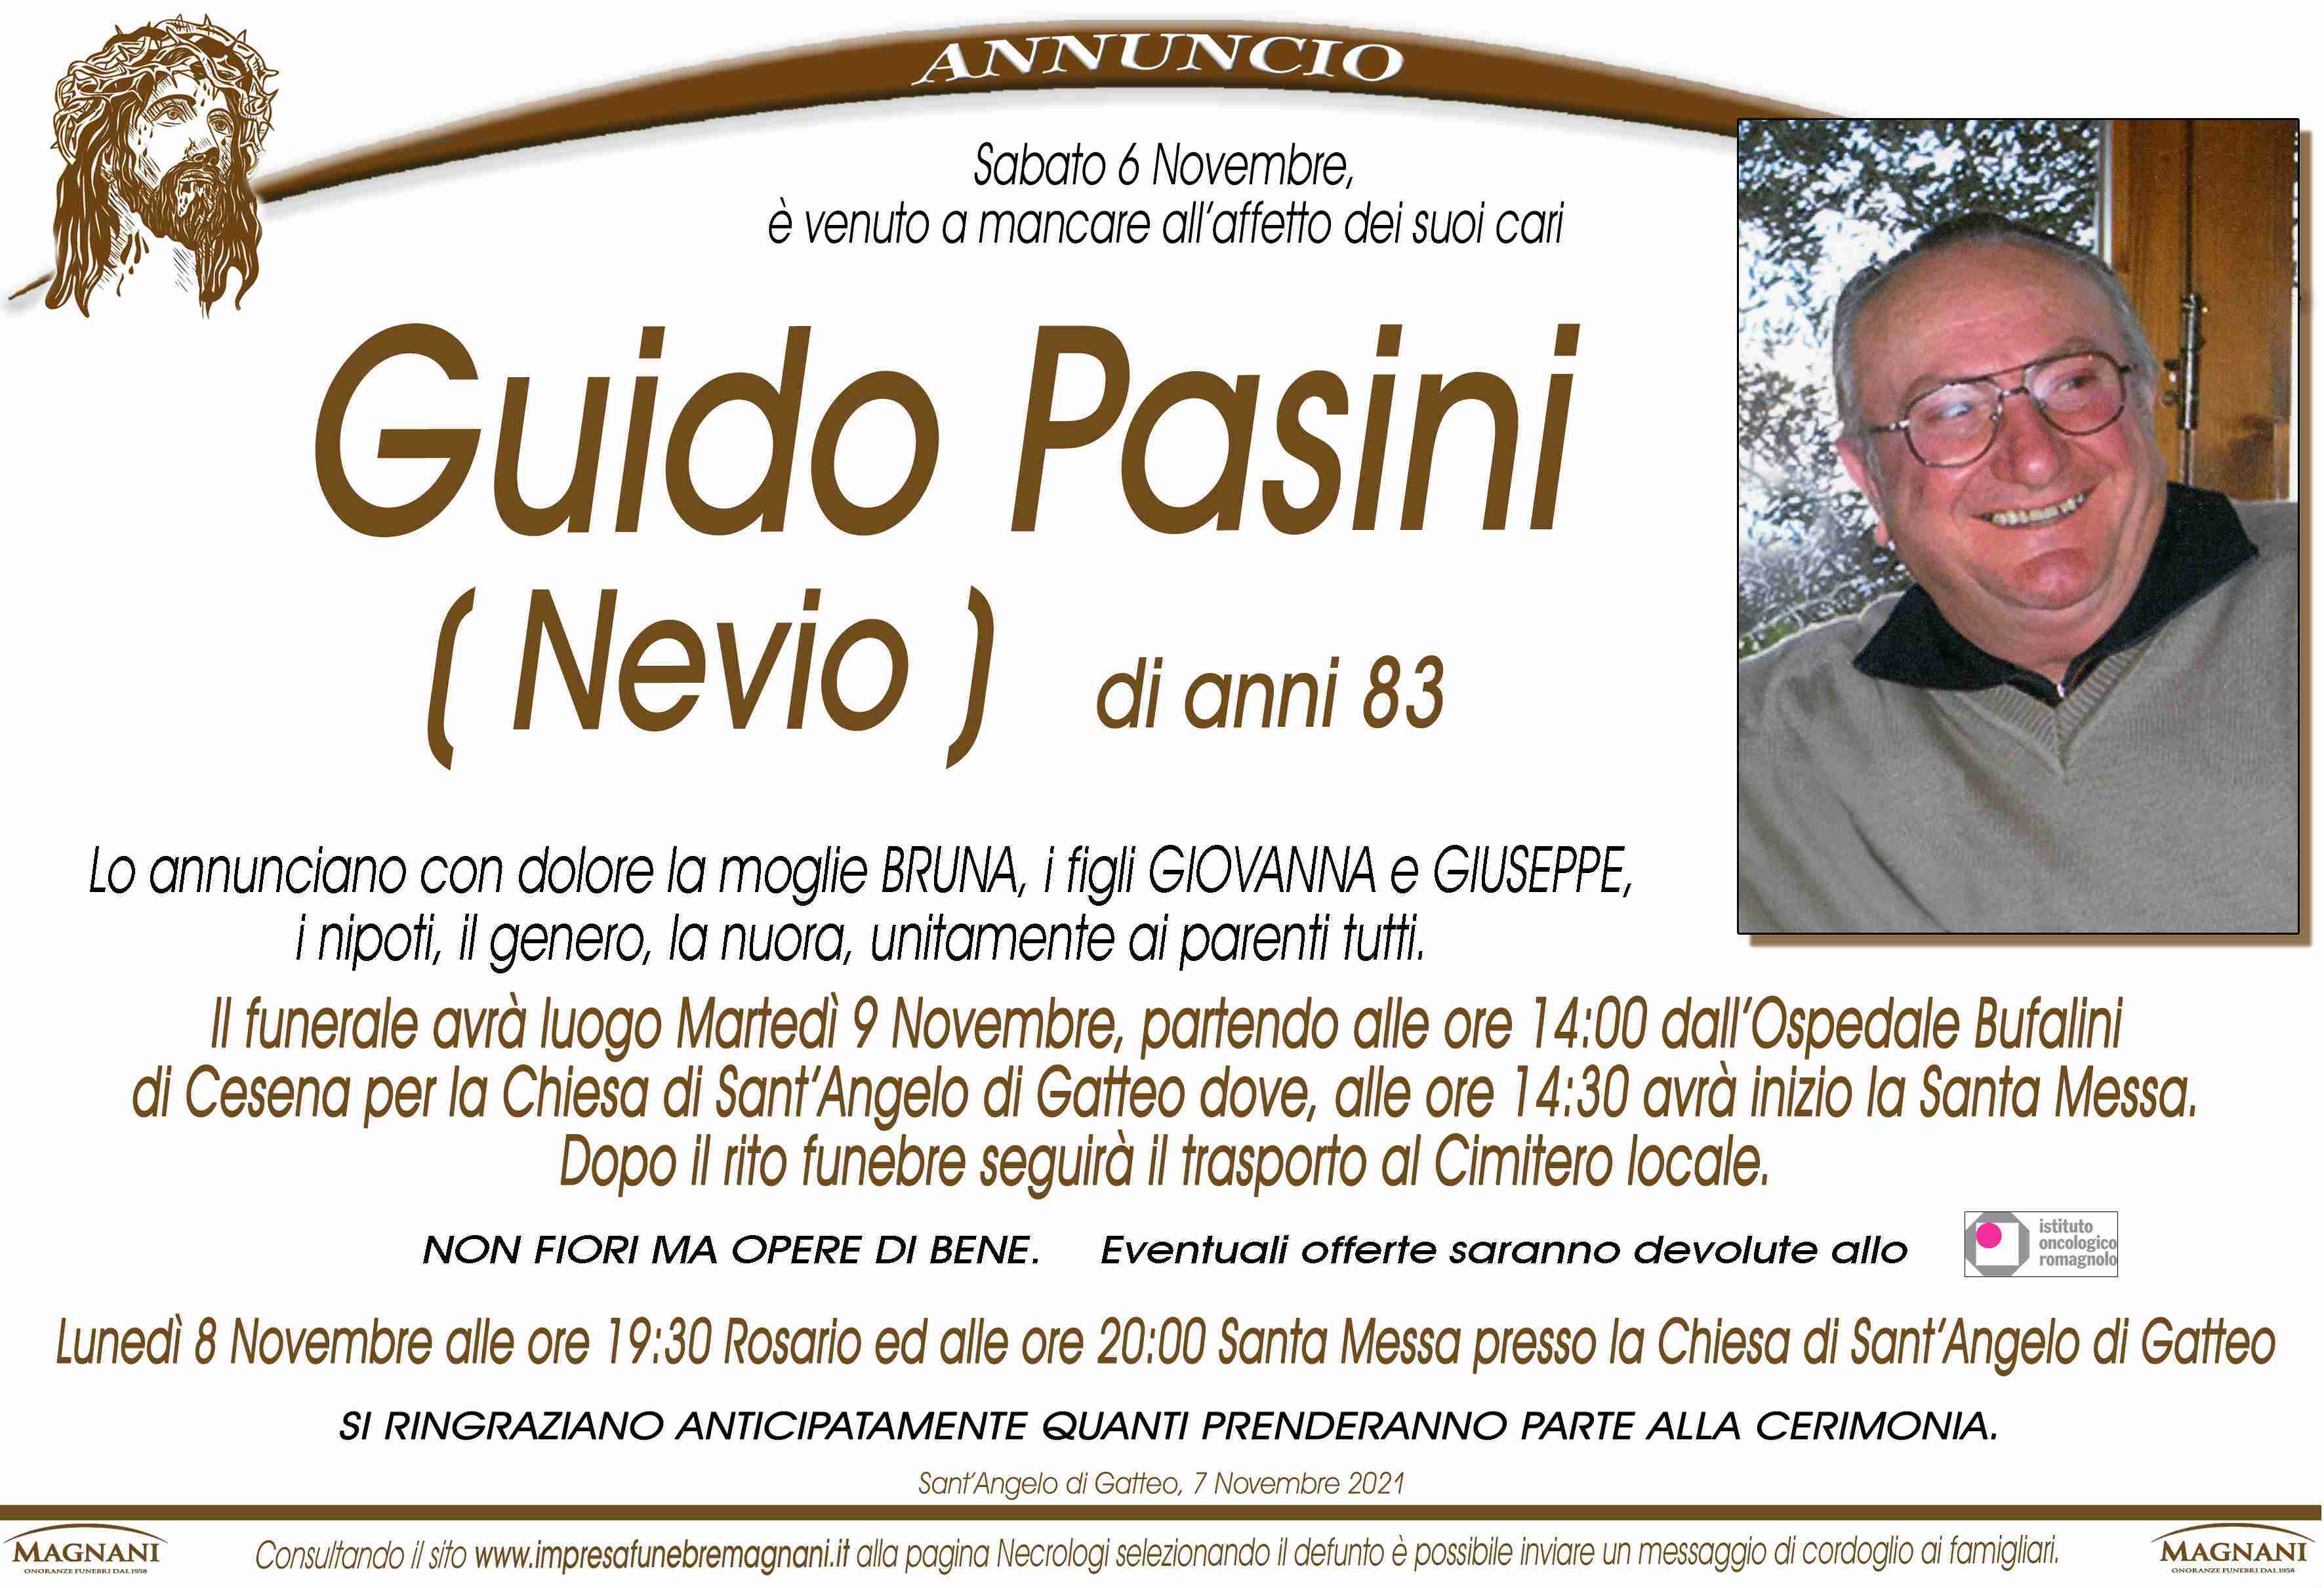 Guido Pasini